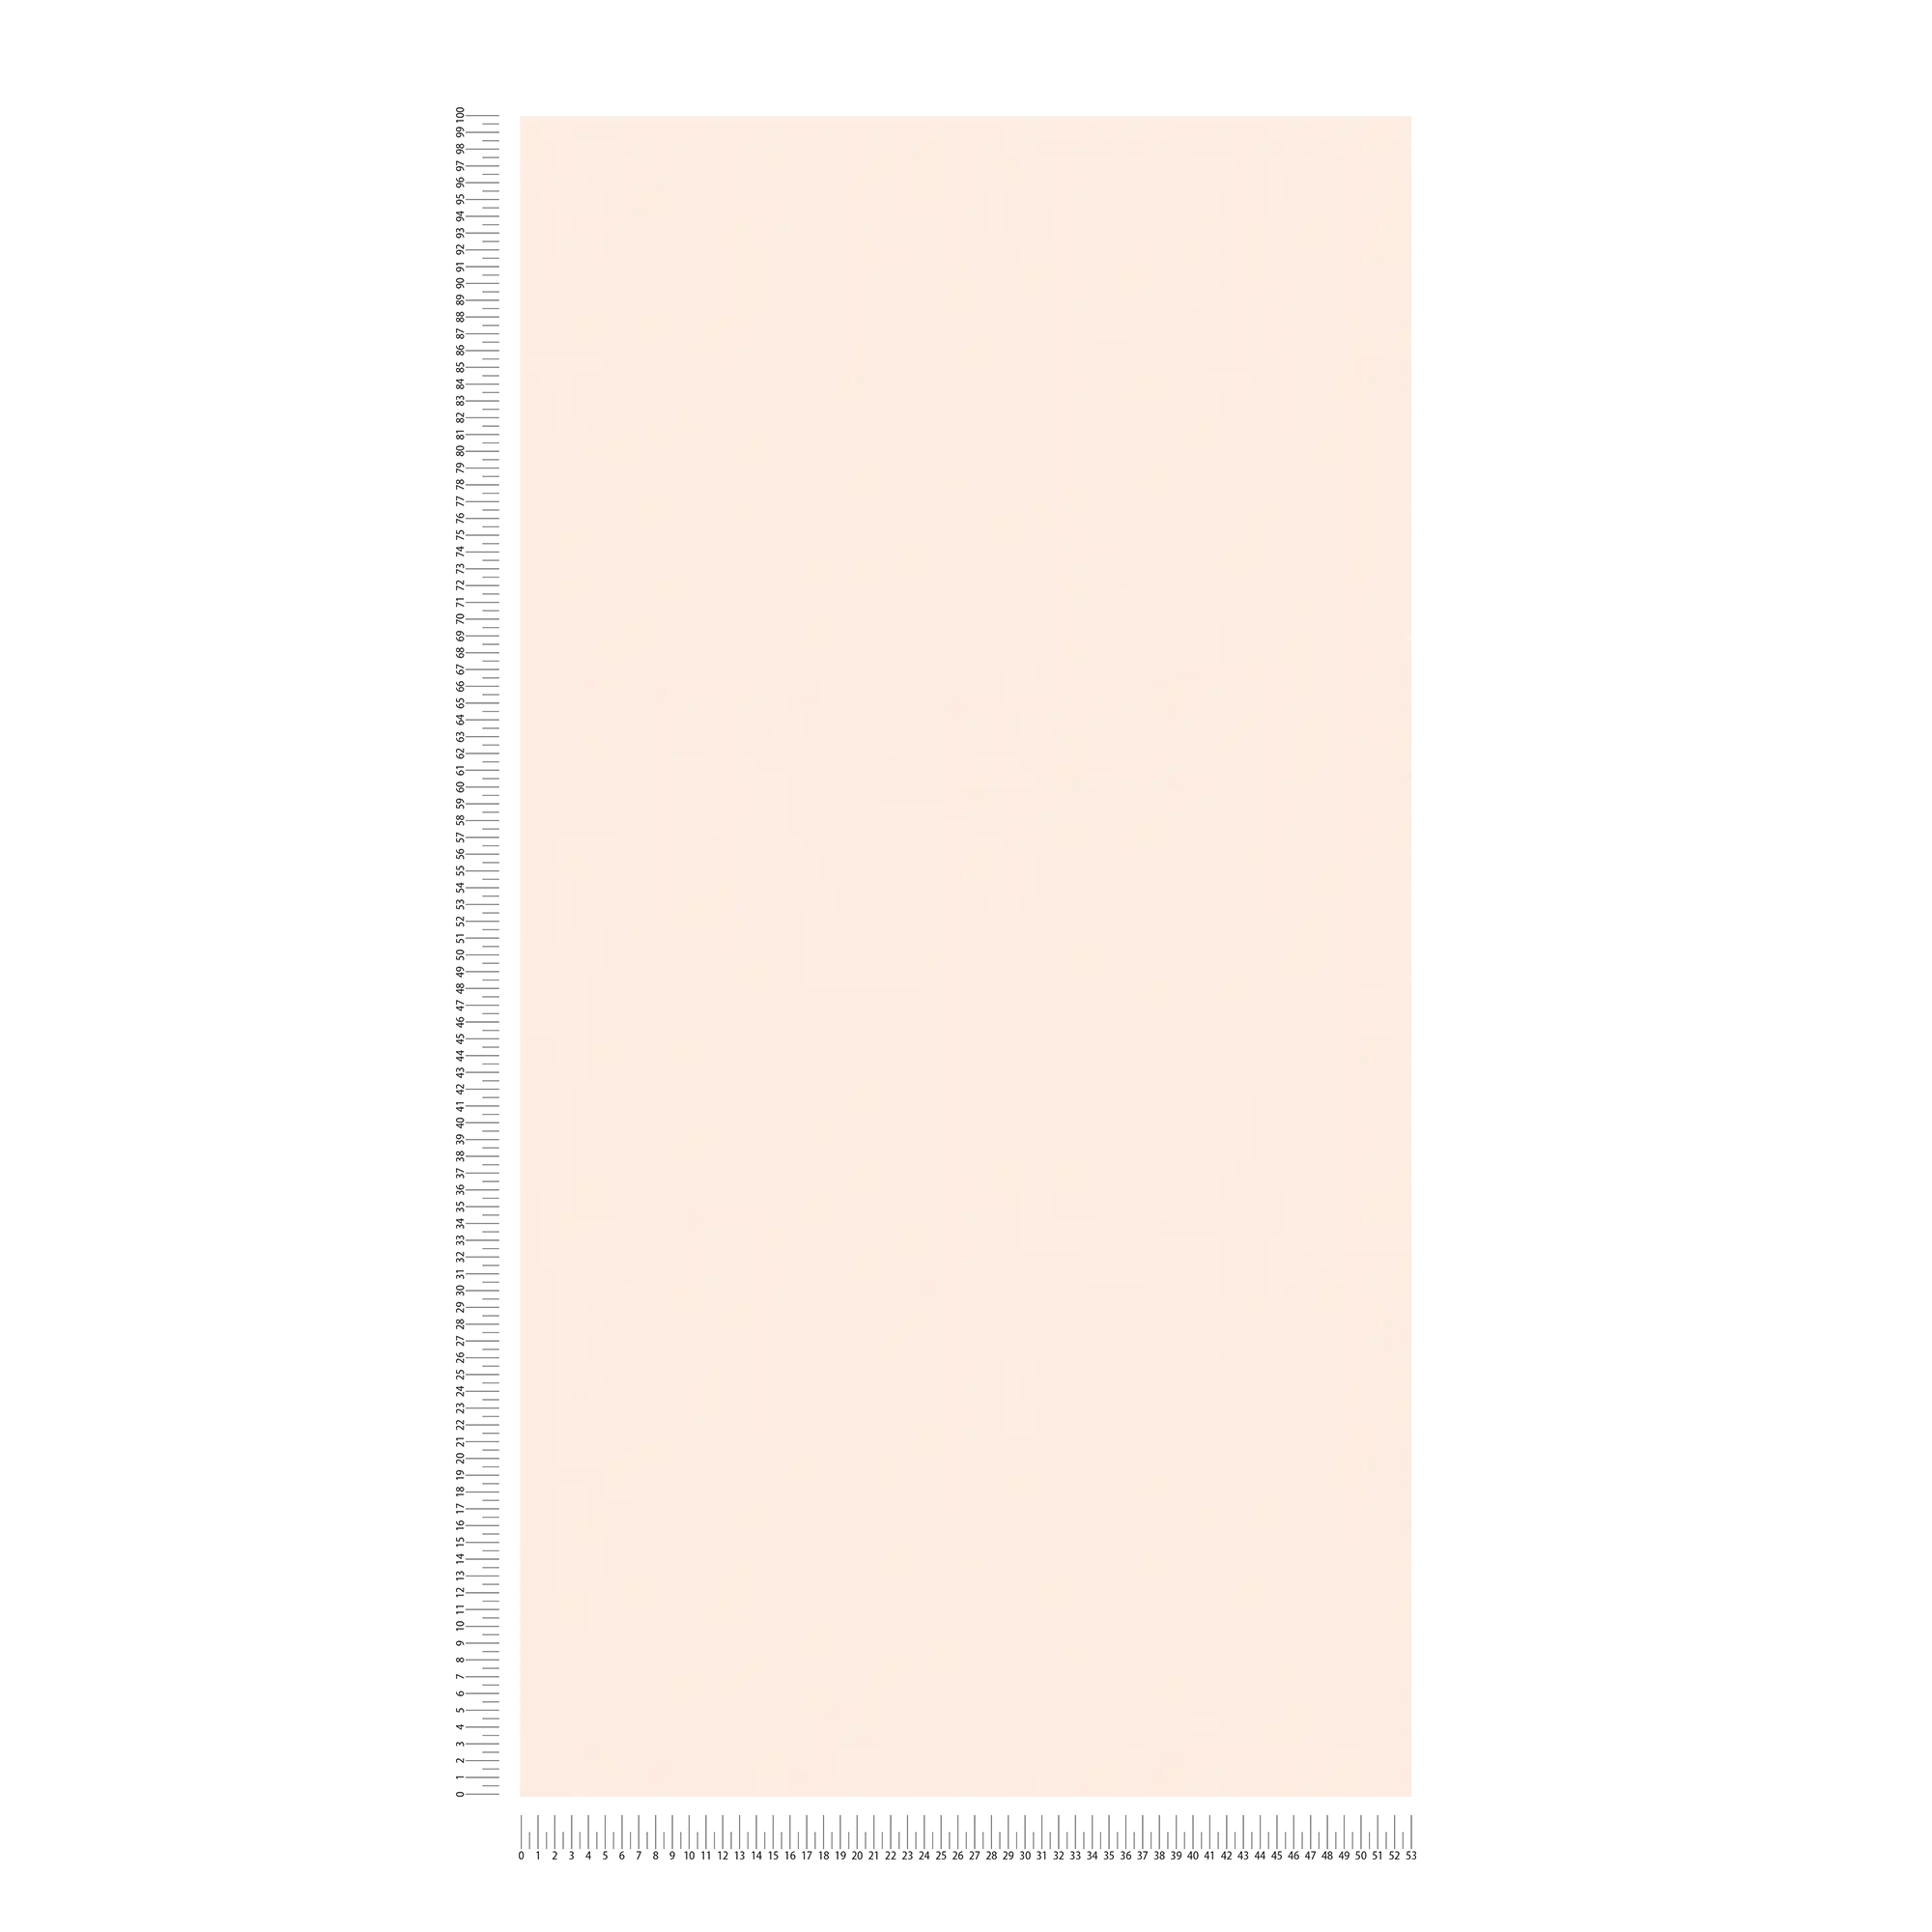             Plain Behang Roze Pastel voor Babykamer
        